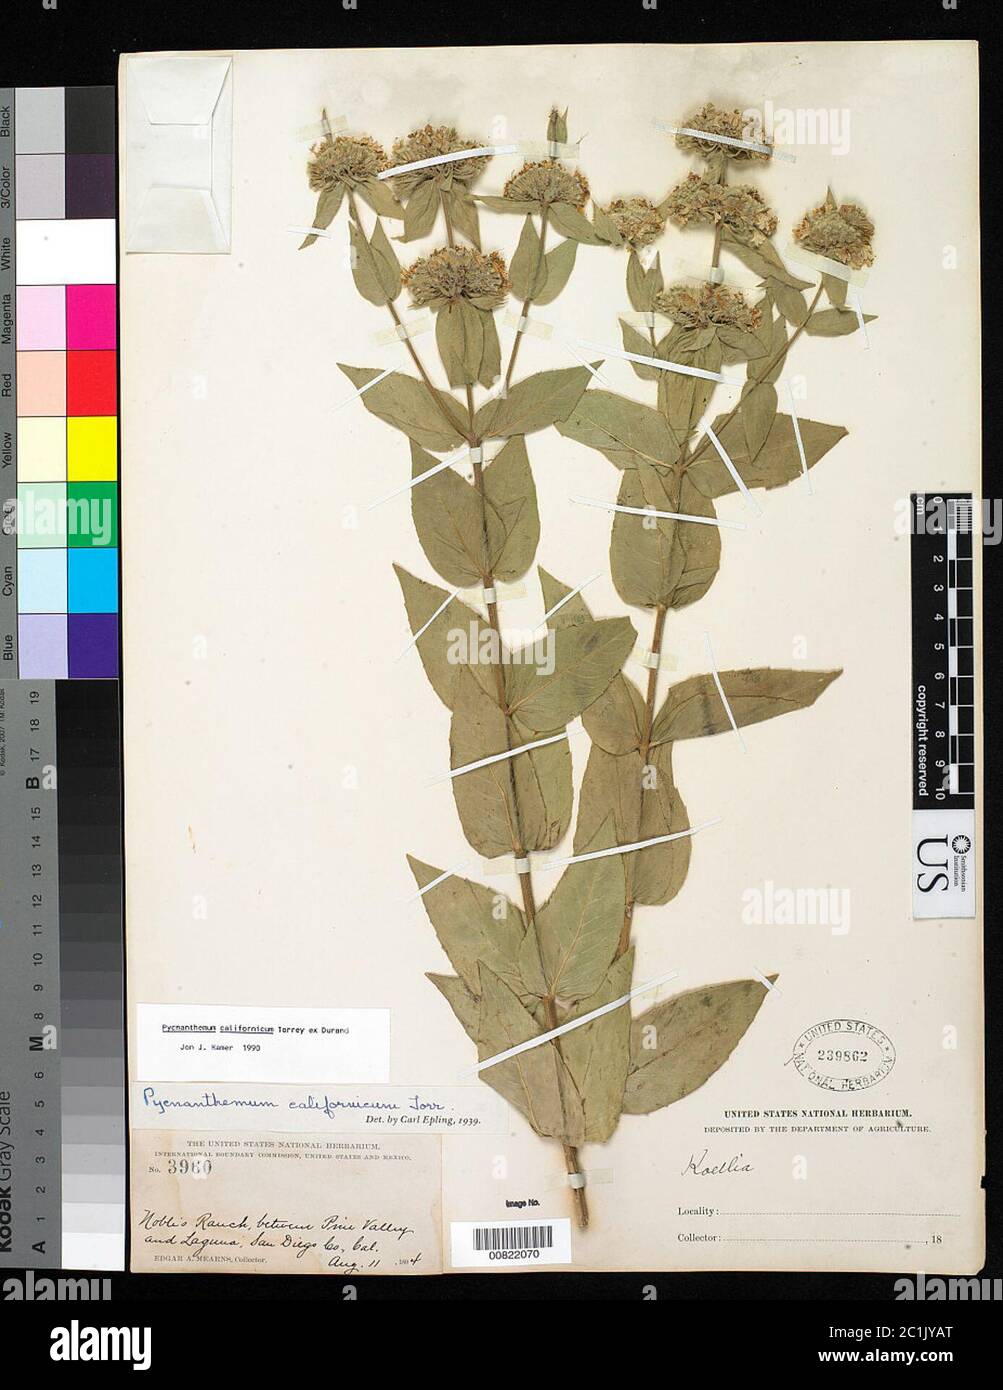 Pycnanthemum californicum Torr ex Durand Pycnanthemum californicum Torr ex Durand. Stock Photo